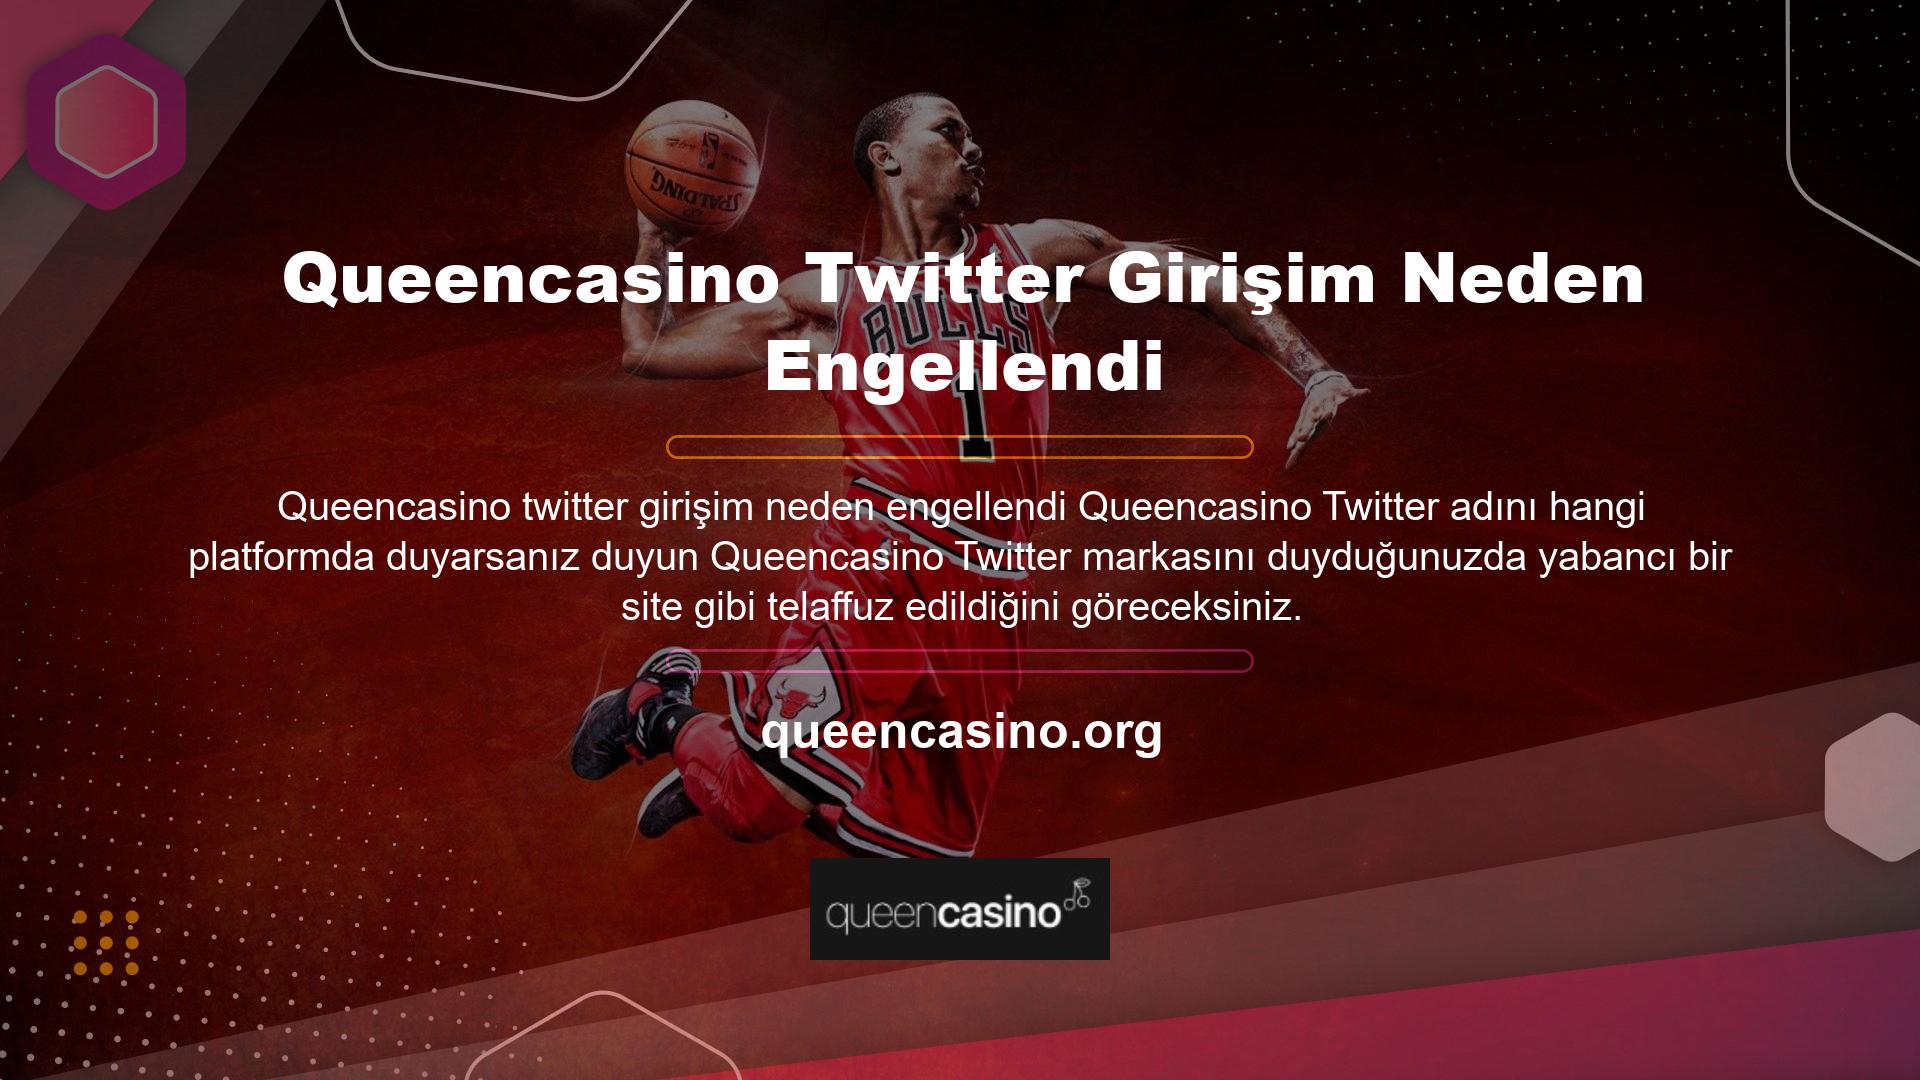 Queencasino twitter girişim neden engellendi